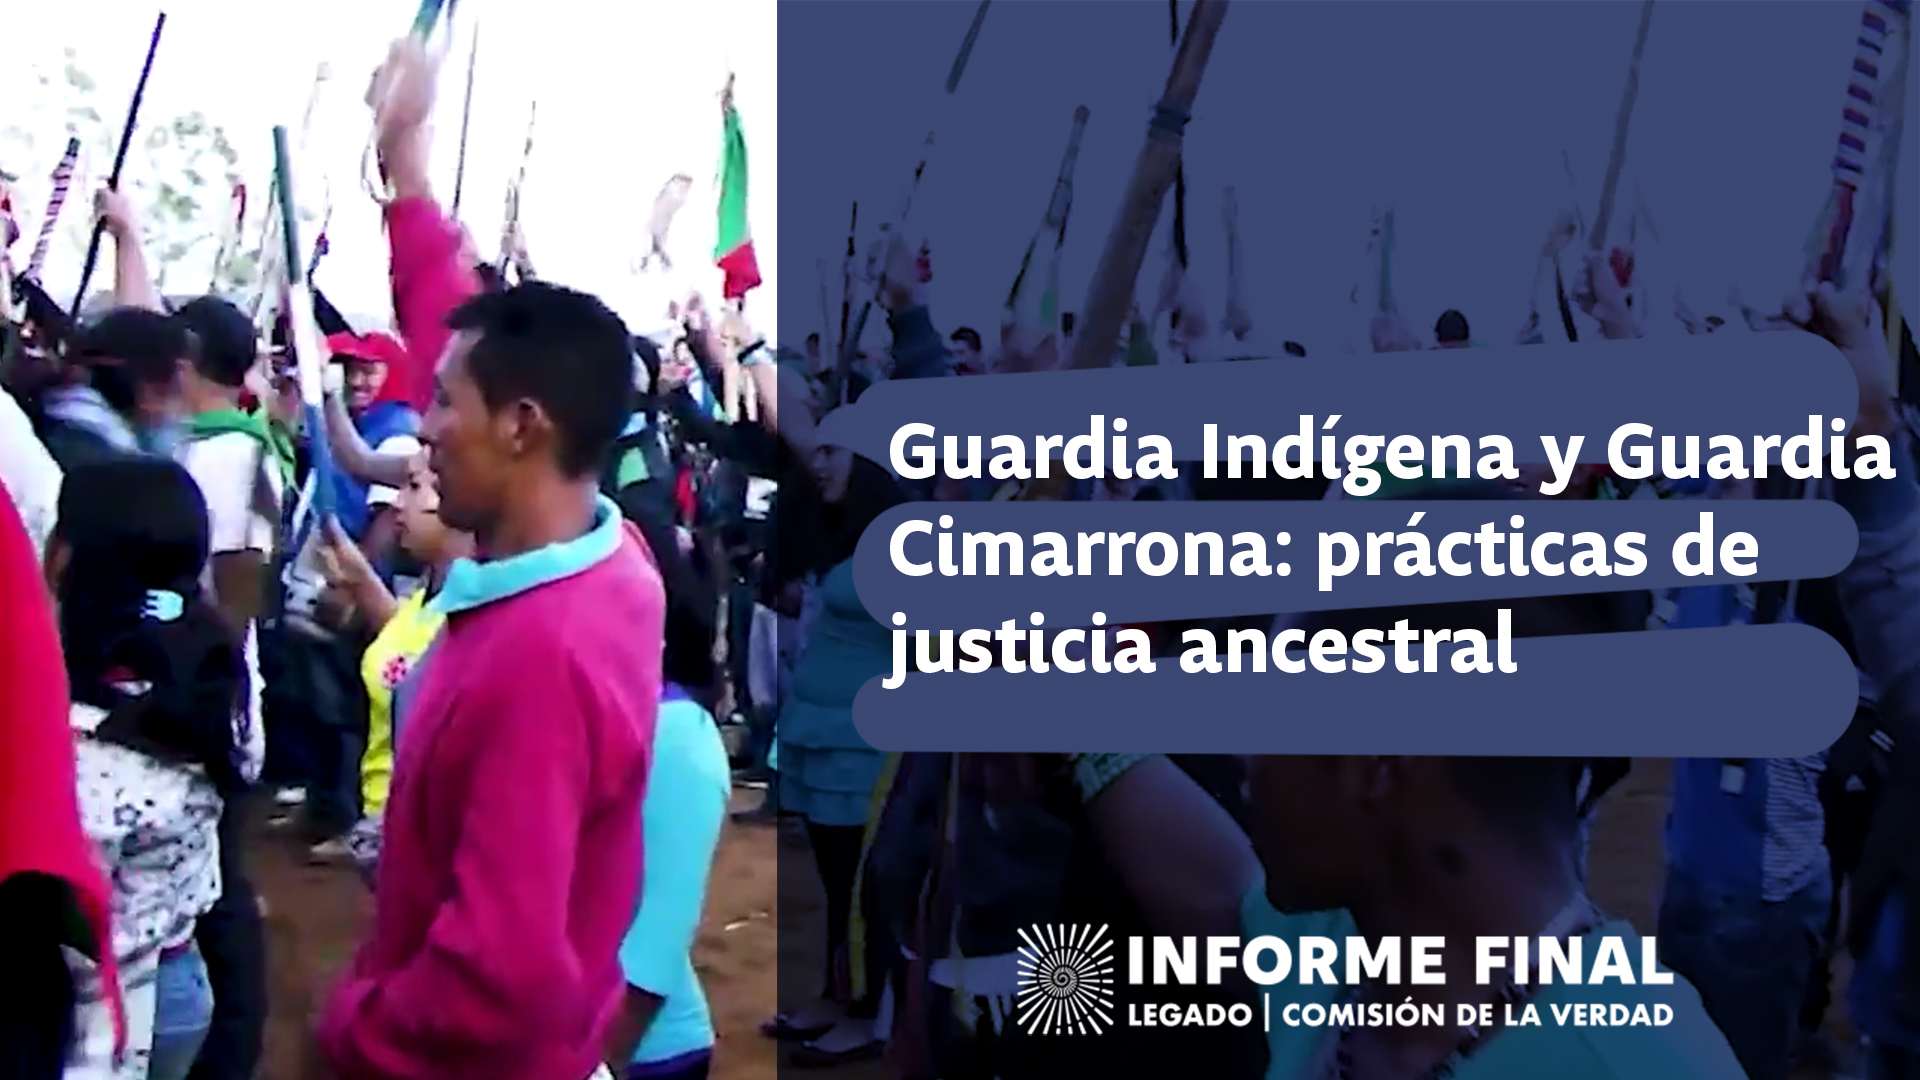 Los pueblos étnicos, desde la ancestralidad, han desarrollado ejercicios de convivencia, justicia y gobierno propio en los territorios.